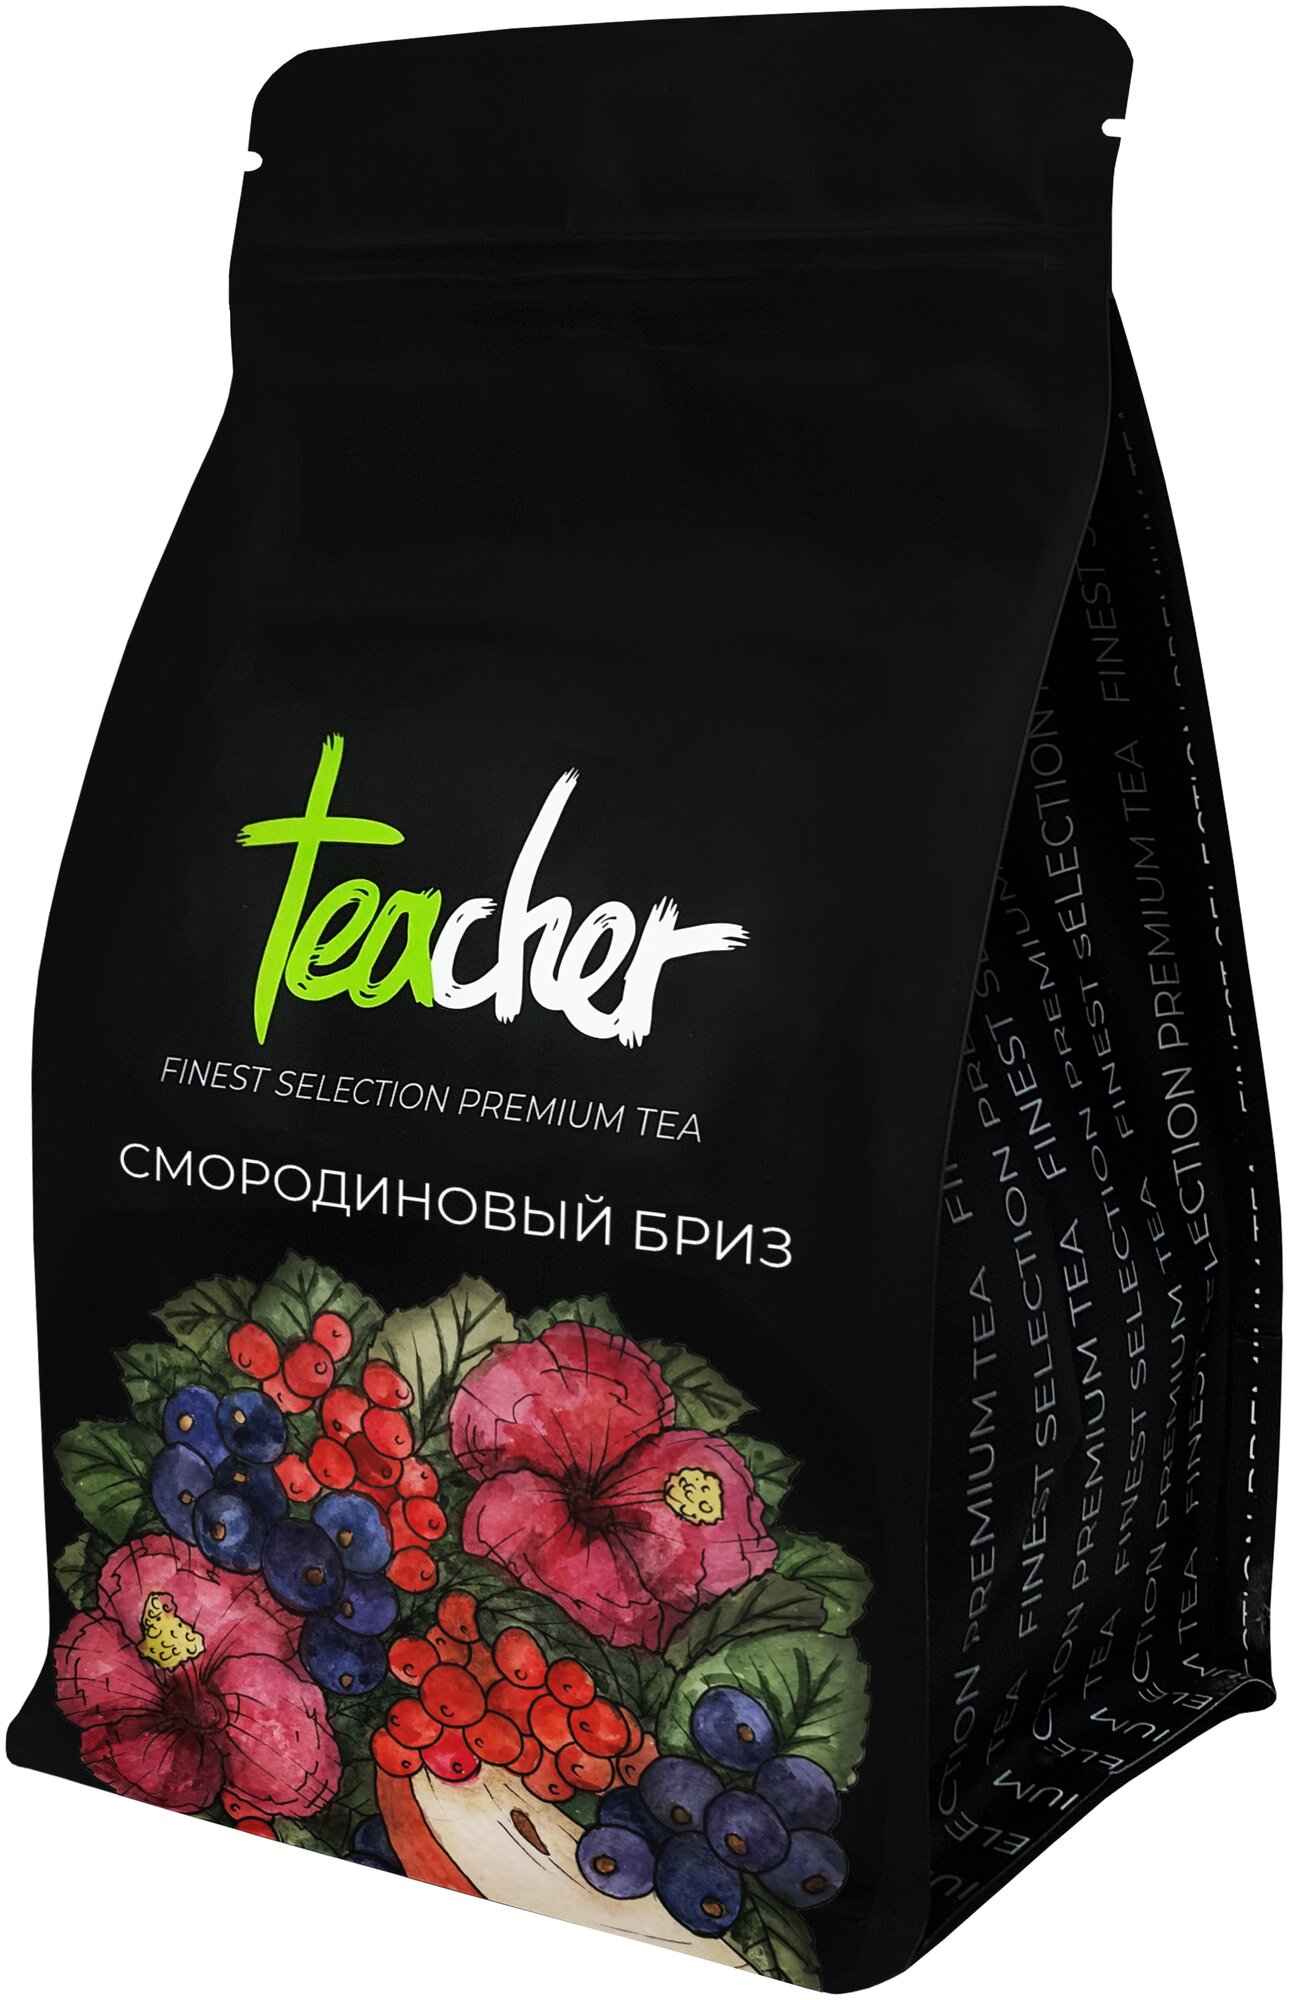 Чай Teacher Смородиновый бриз ягодный, премиум, 250г - фотография № 1